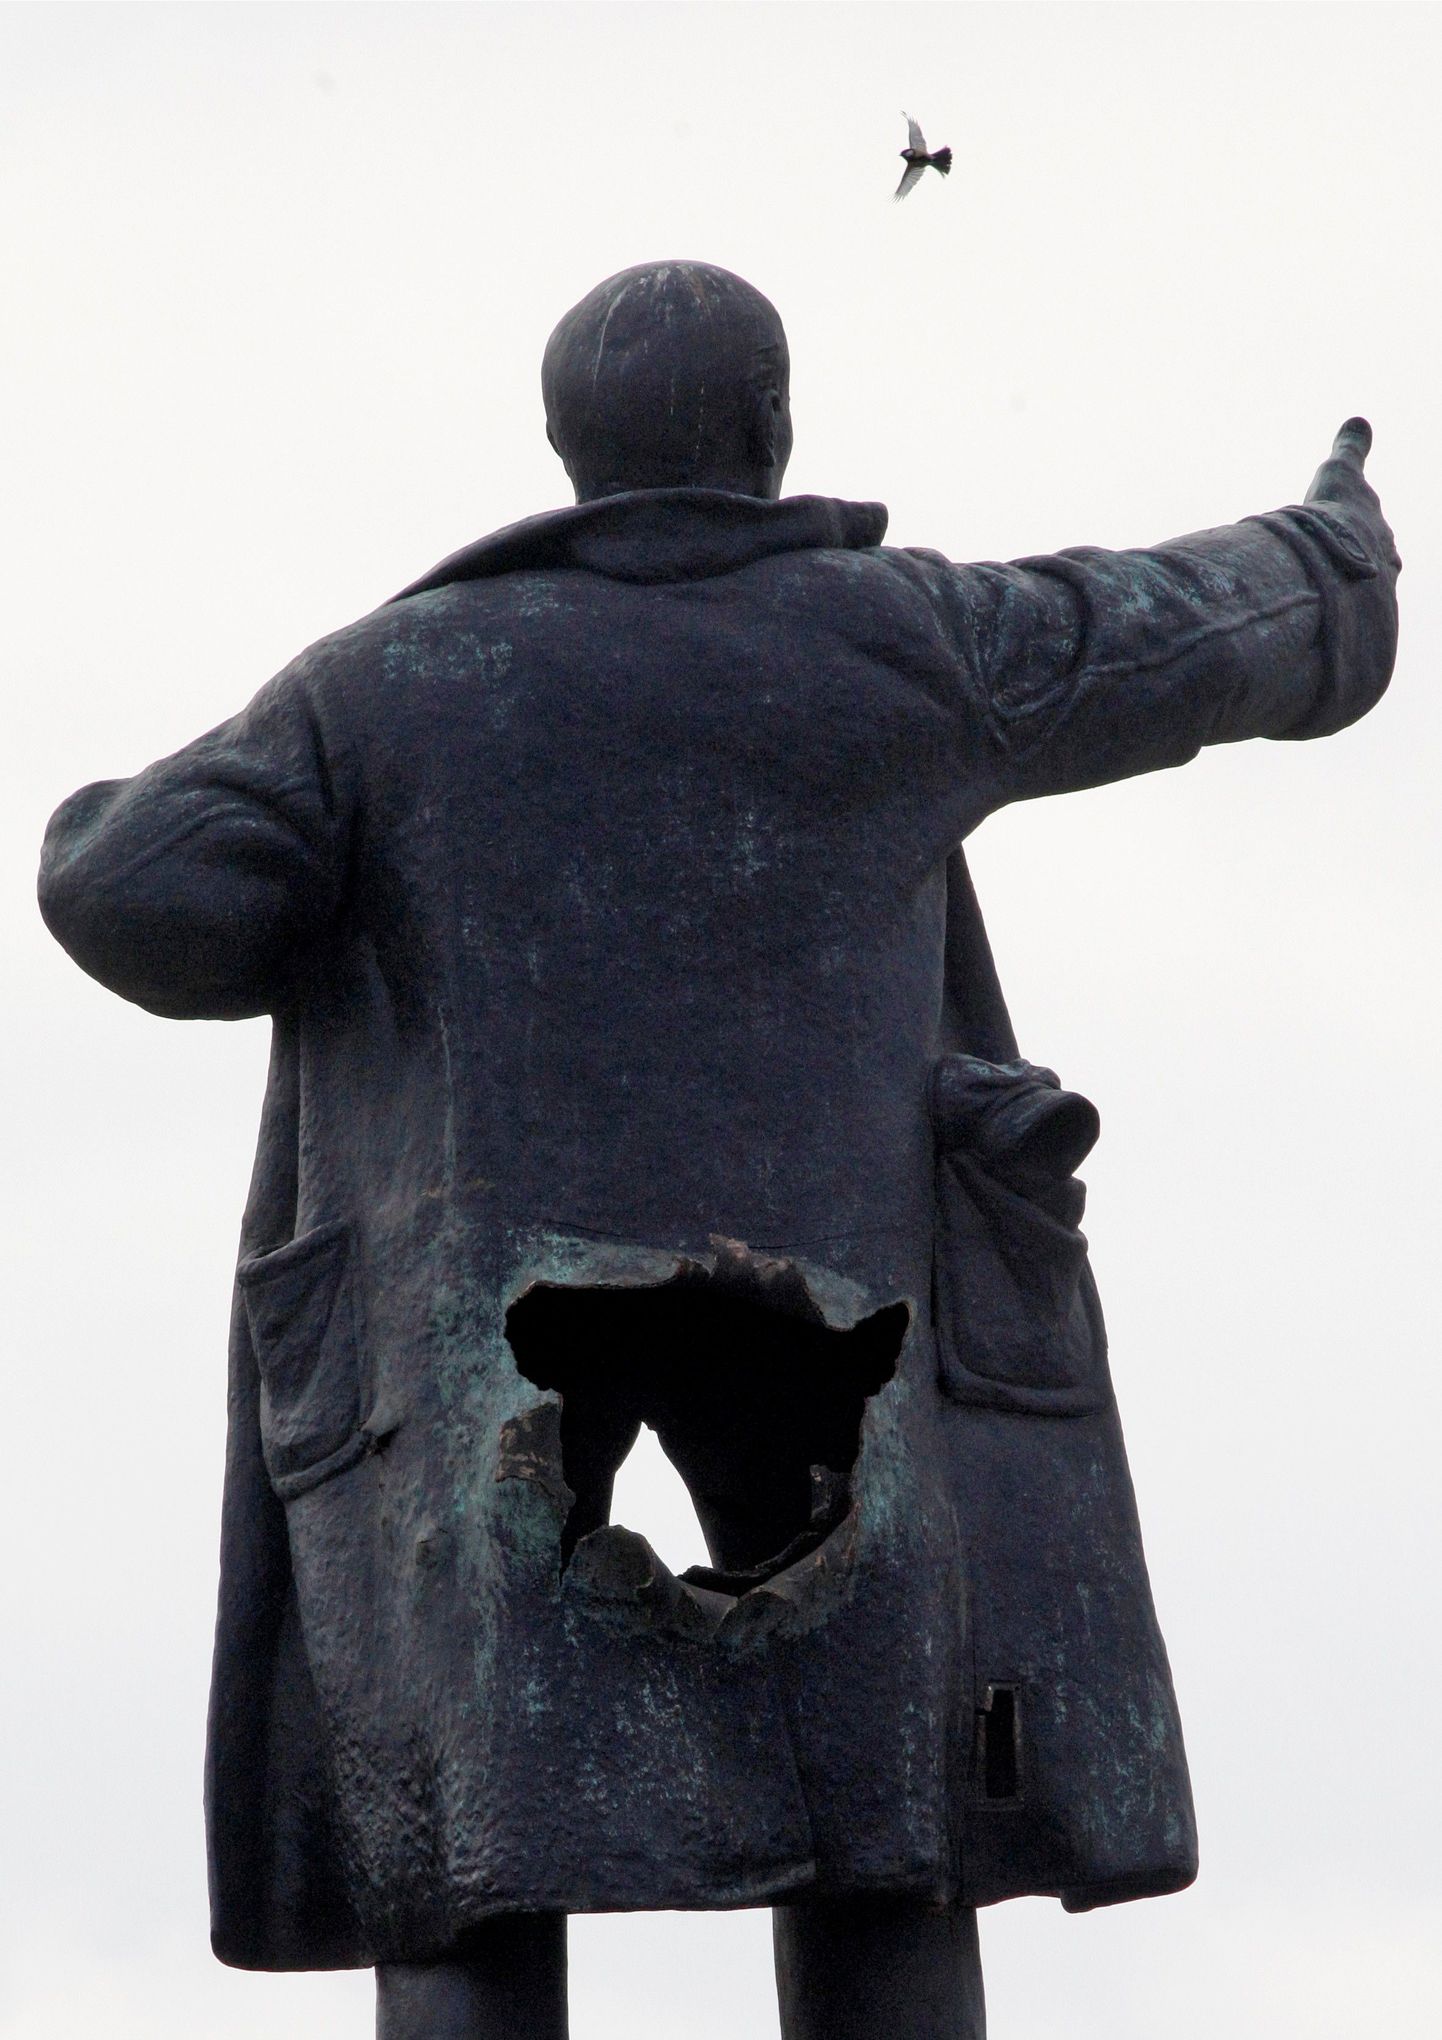 Lenini kuju Soome vaksali juures Peterburis vahetult pärast õhkimiskatset.